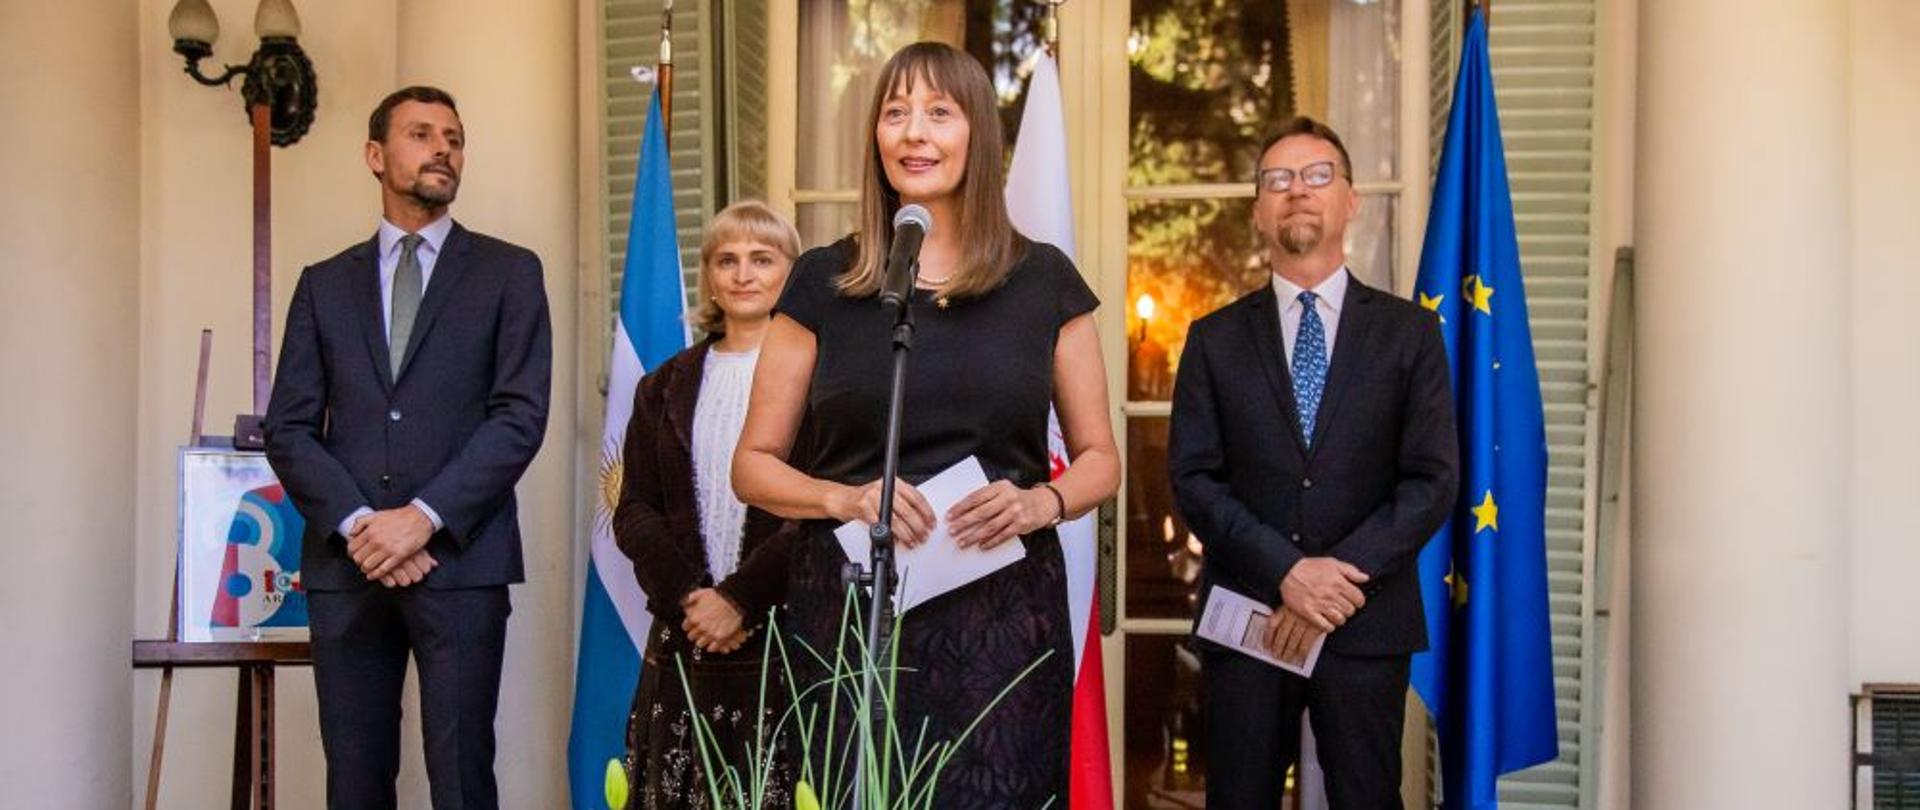 Z okazji święta Konstytucji 3 Maja w ogrodzie Ambasady RP w Buenos Aires odbyło się spotkanie połączone z pokazem filmu o pomocy udzielanej Ukrainie przez Polskę i wystawą zdjęć polskiego dziedzictwa wpisanego na listę UNESCO. 